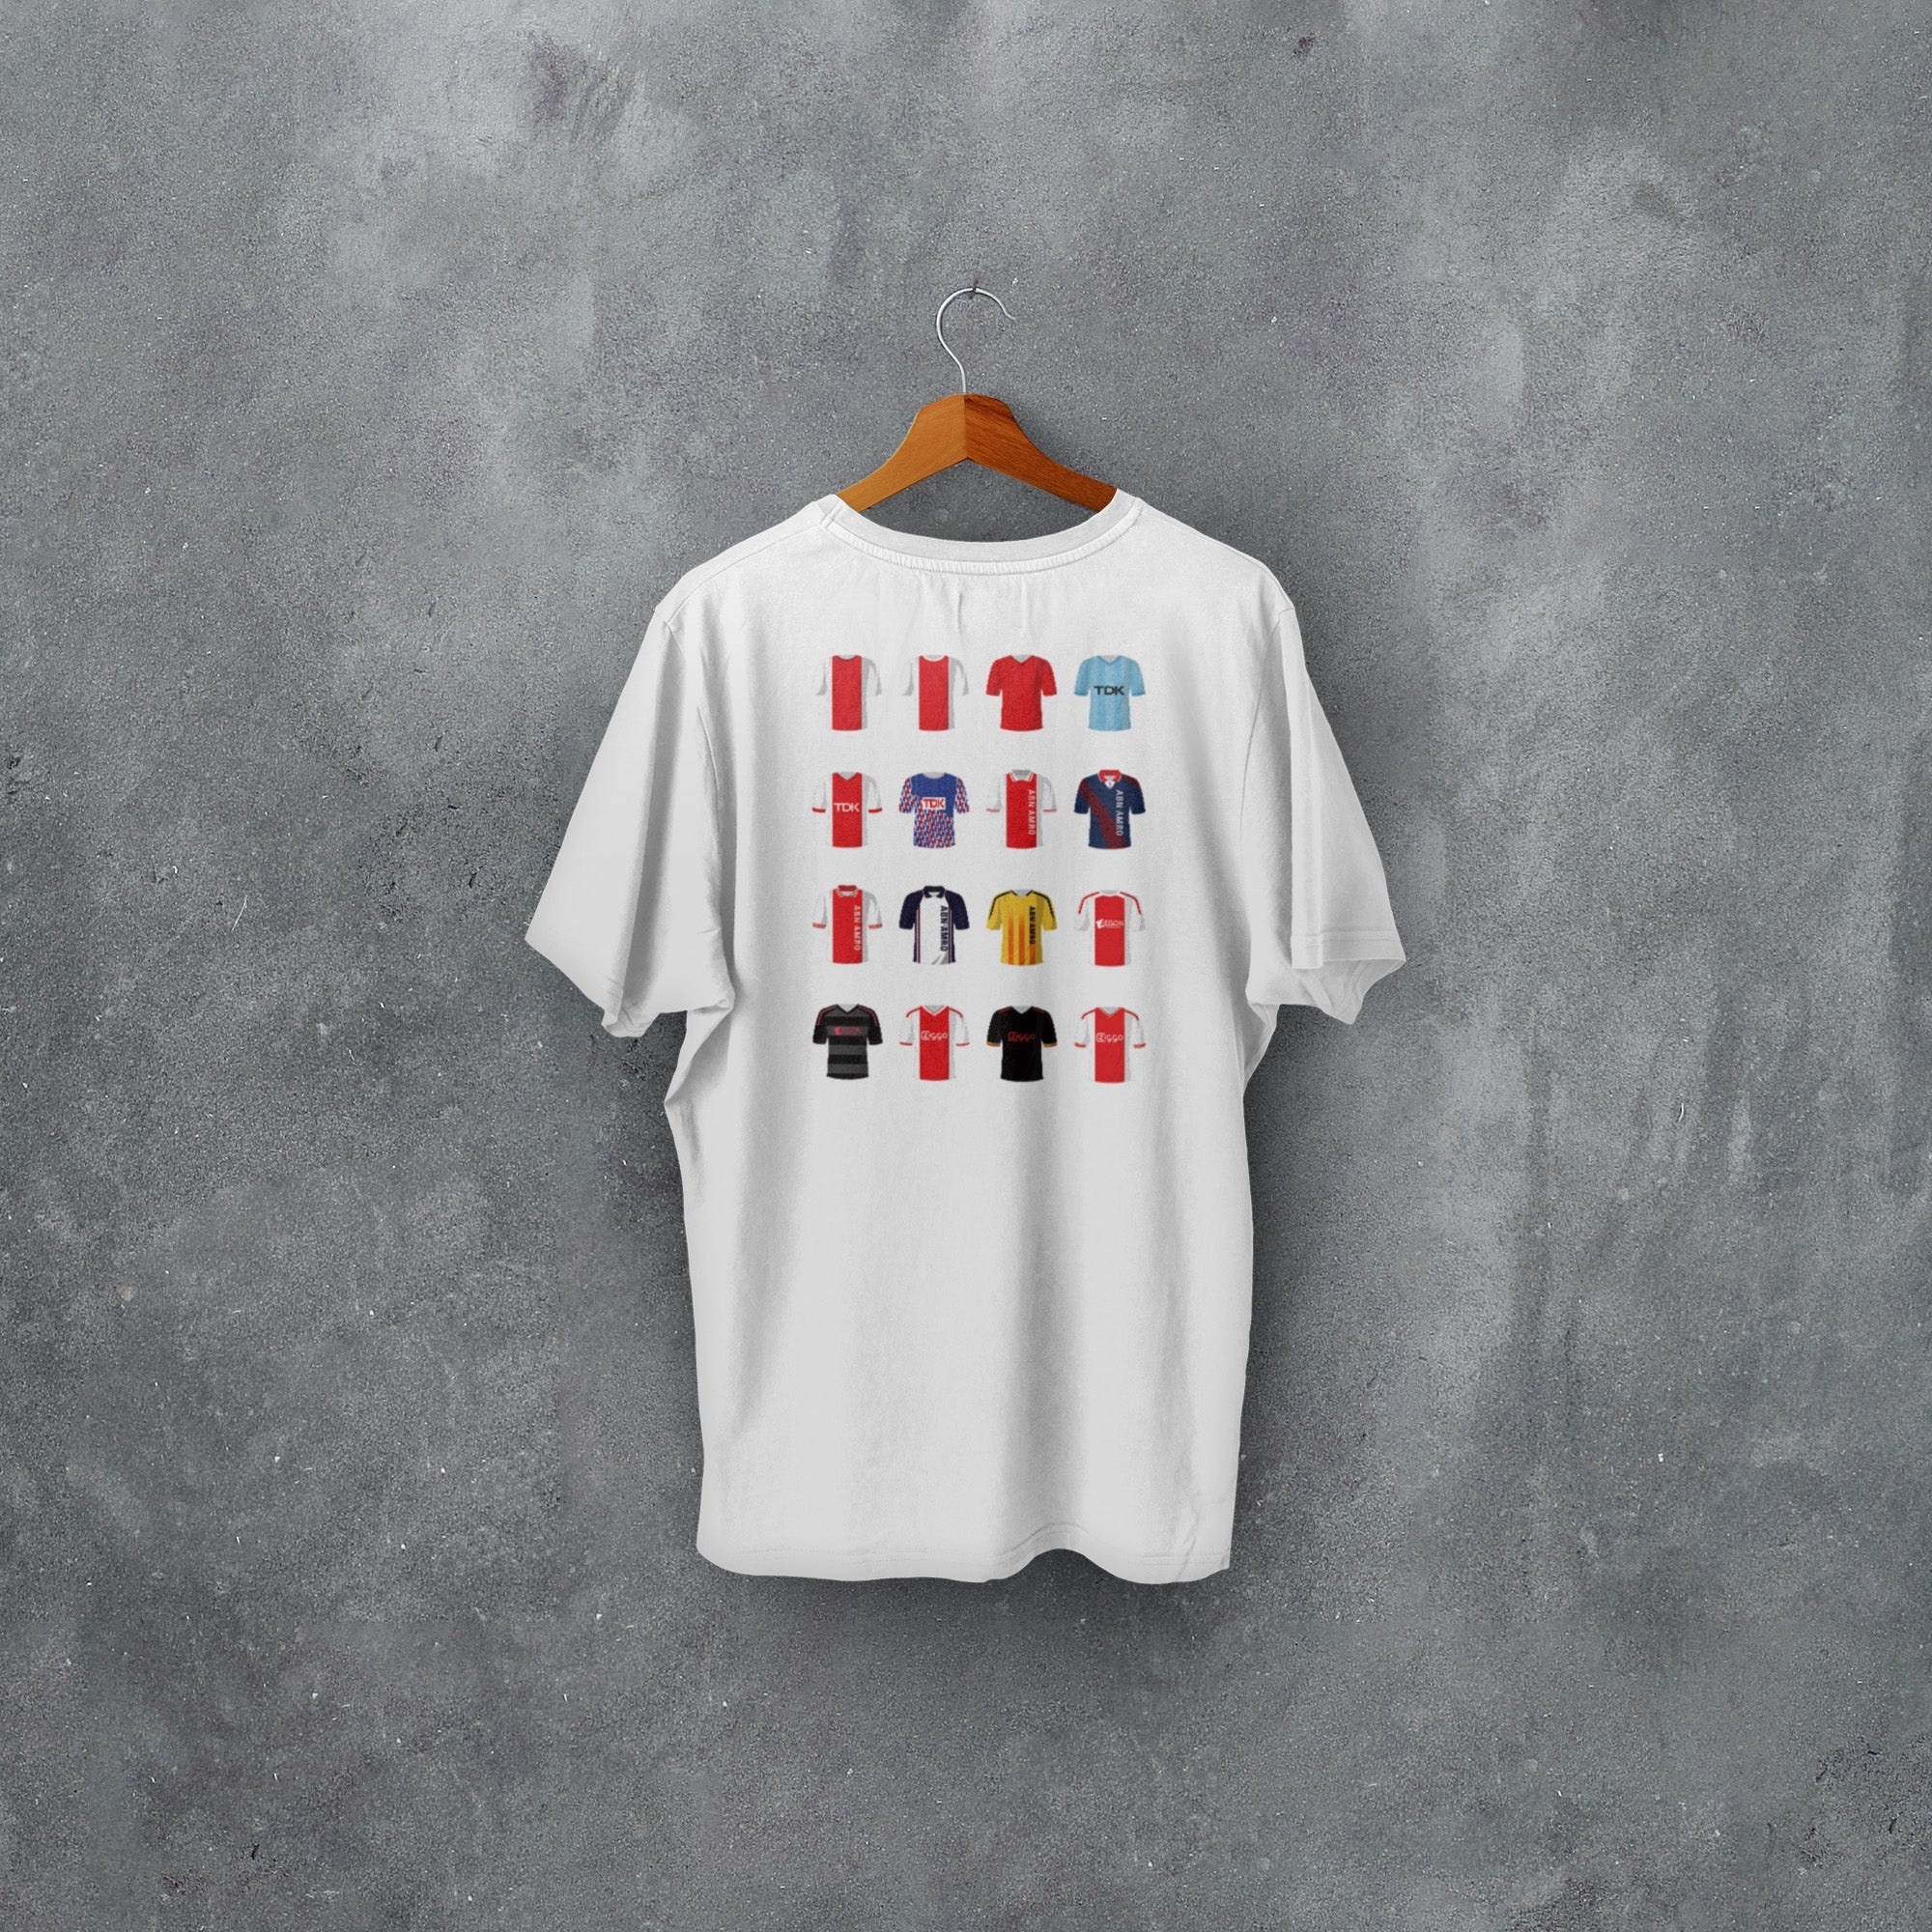 Ajax Classic Kits Football T-Shirt